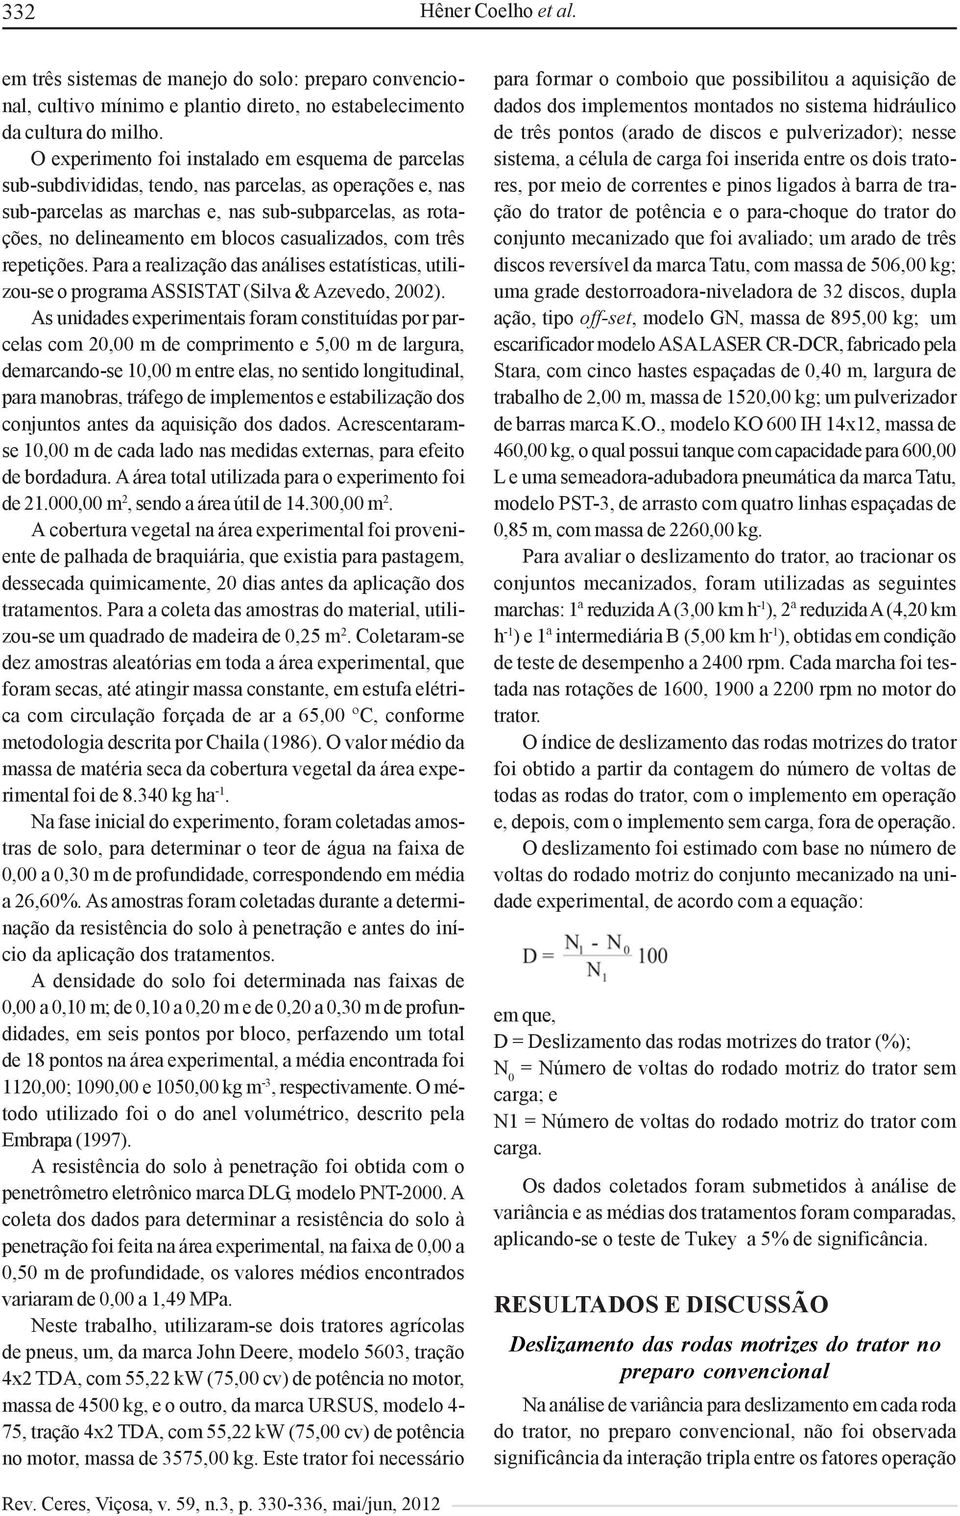 casualizados, com três repetições. Para a realização das análises estatísticas, utilizou-se o programa ASSISTAT (Silva & Azevedo, 2002).